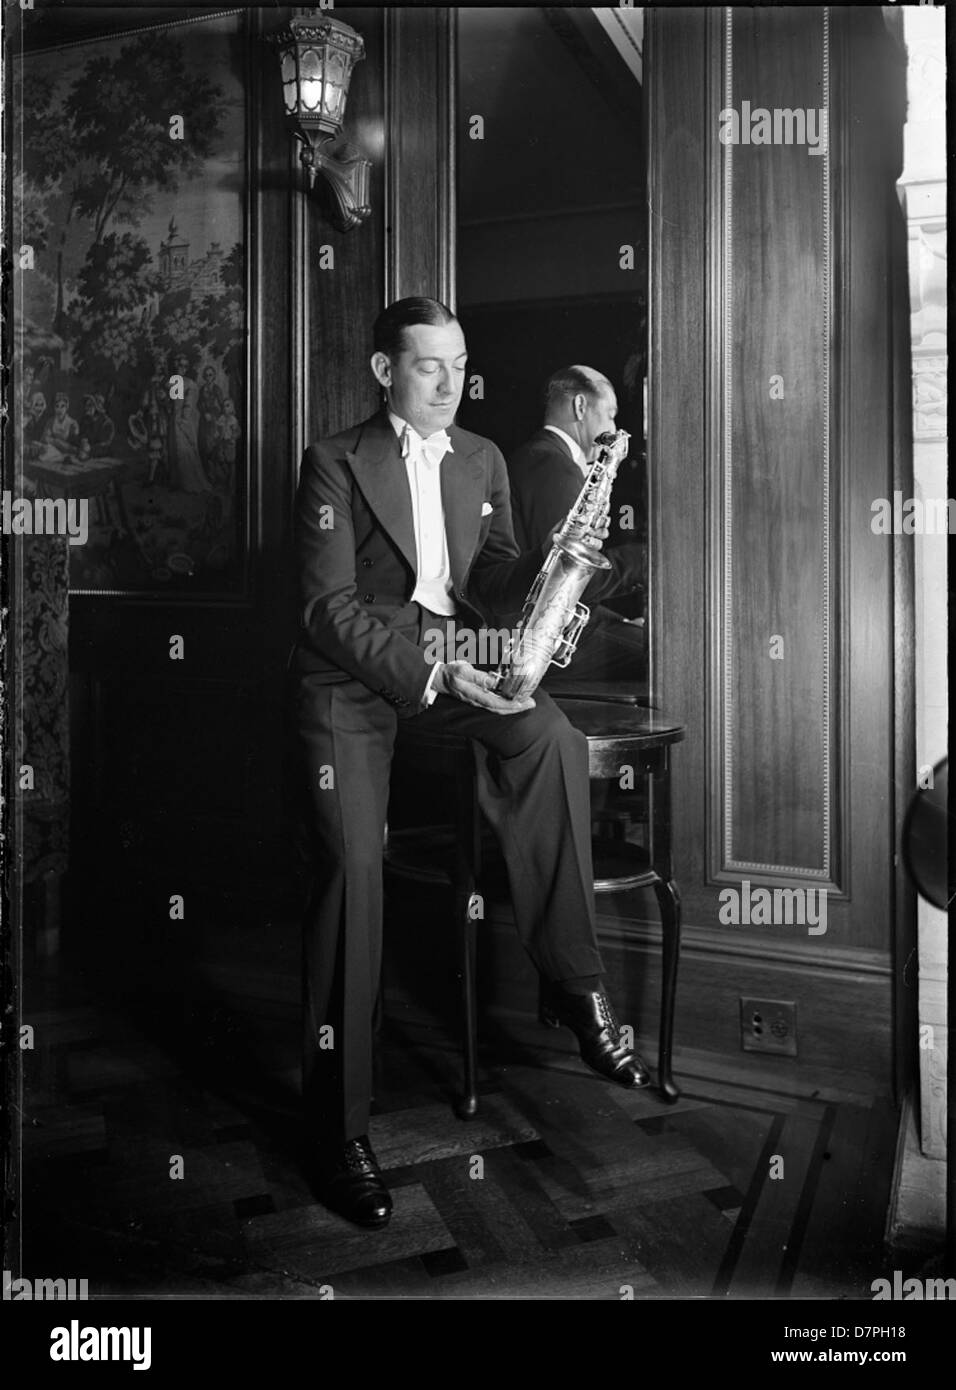 Sam Babicci holding saxophone Stock Photo